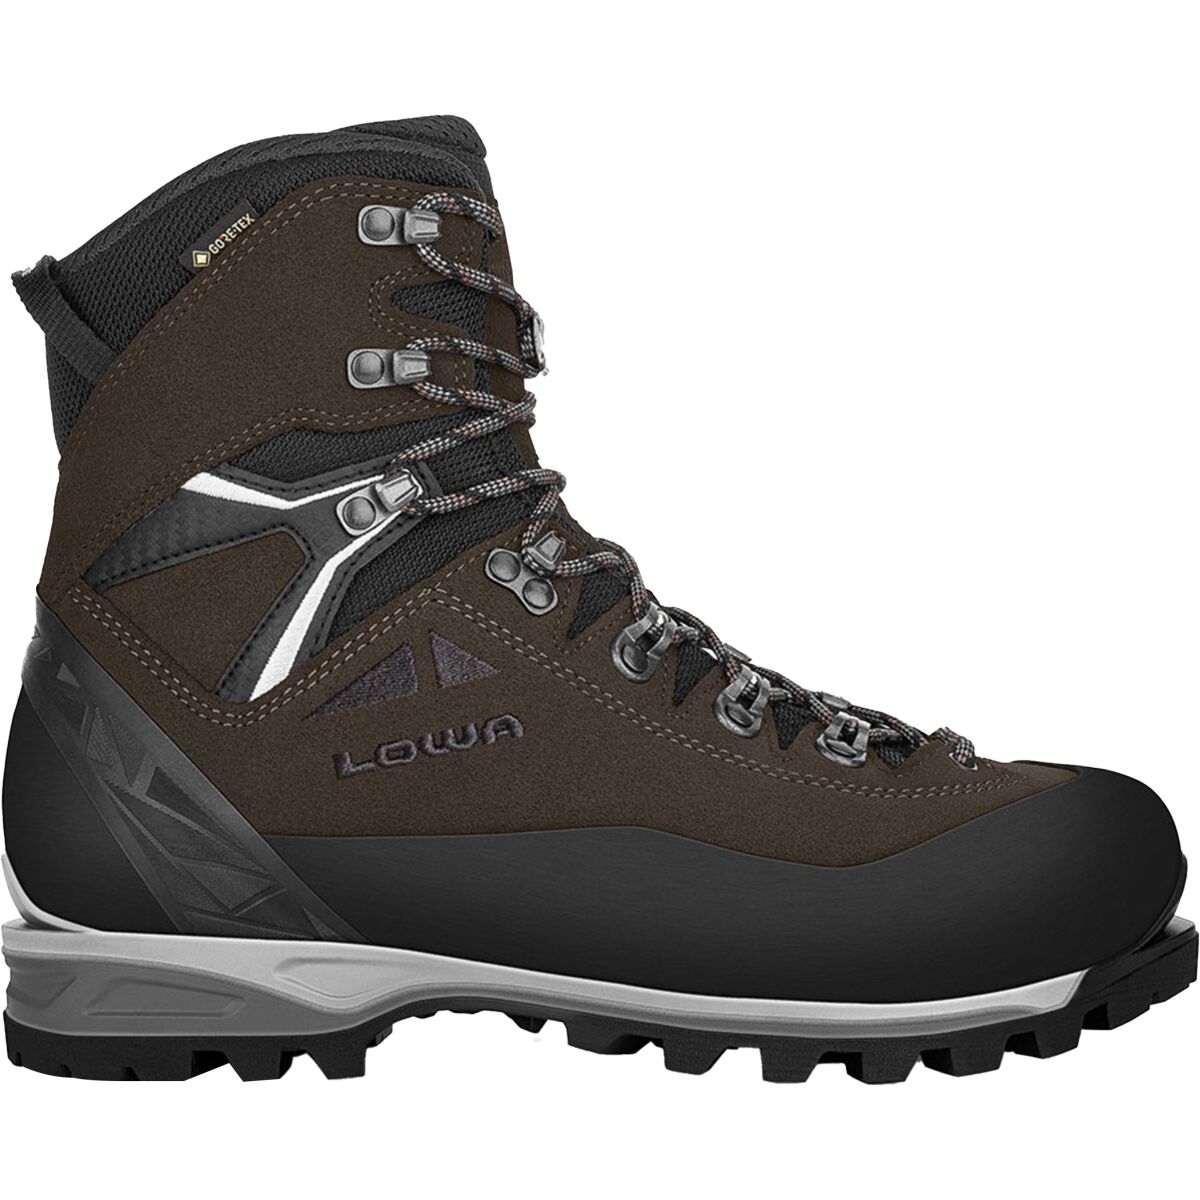 Alpine Expert II GTX Mountaineering Boot - Men